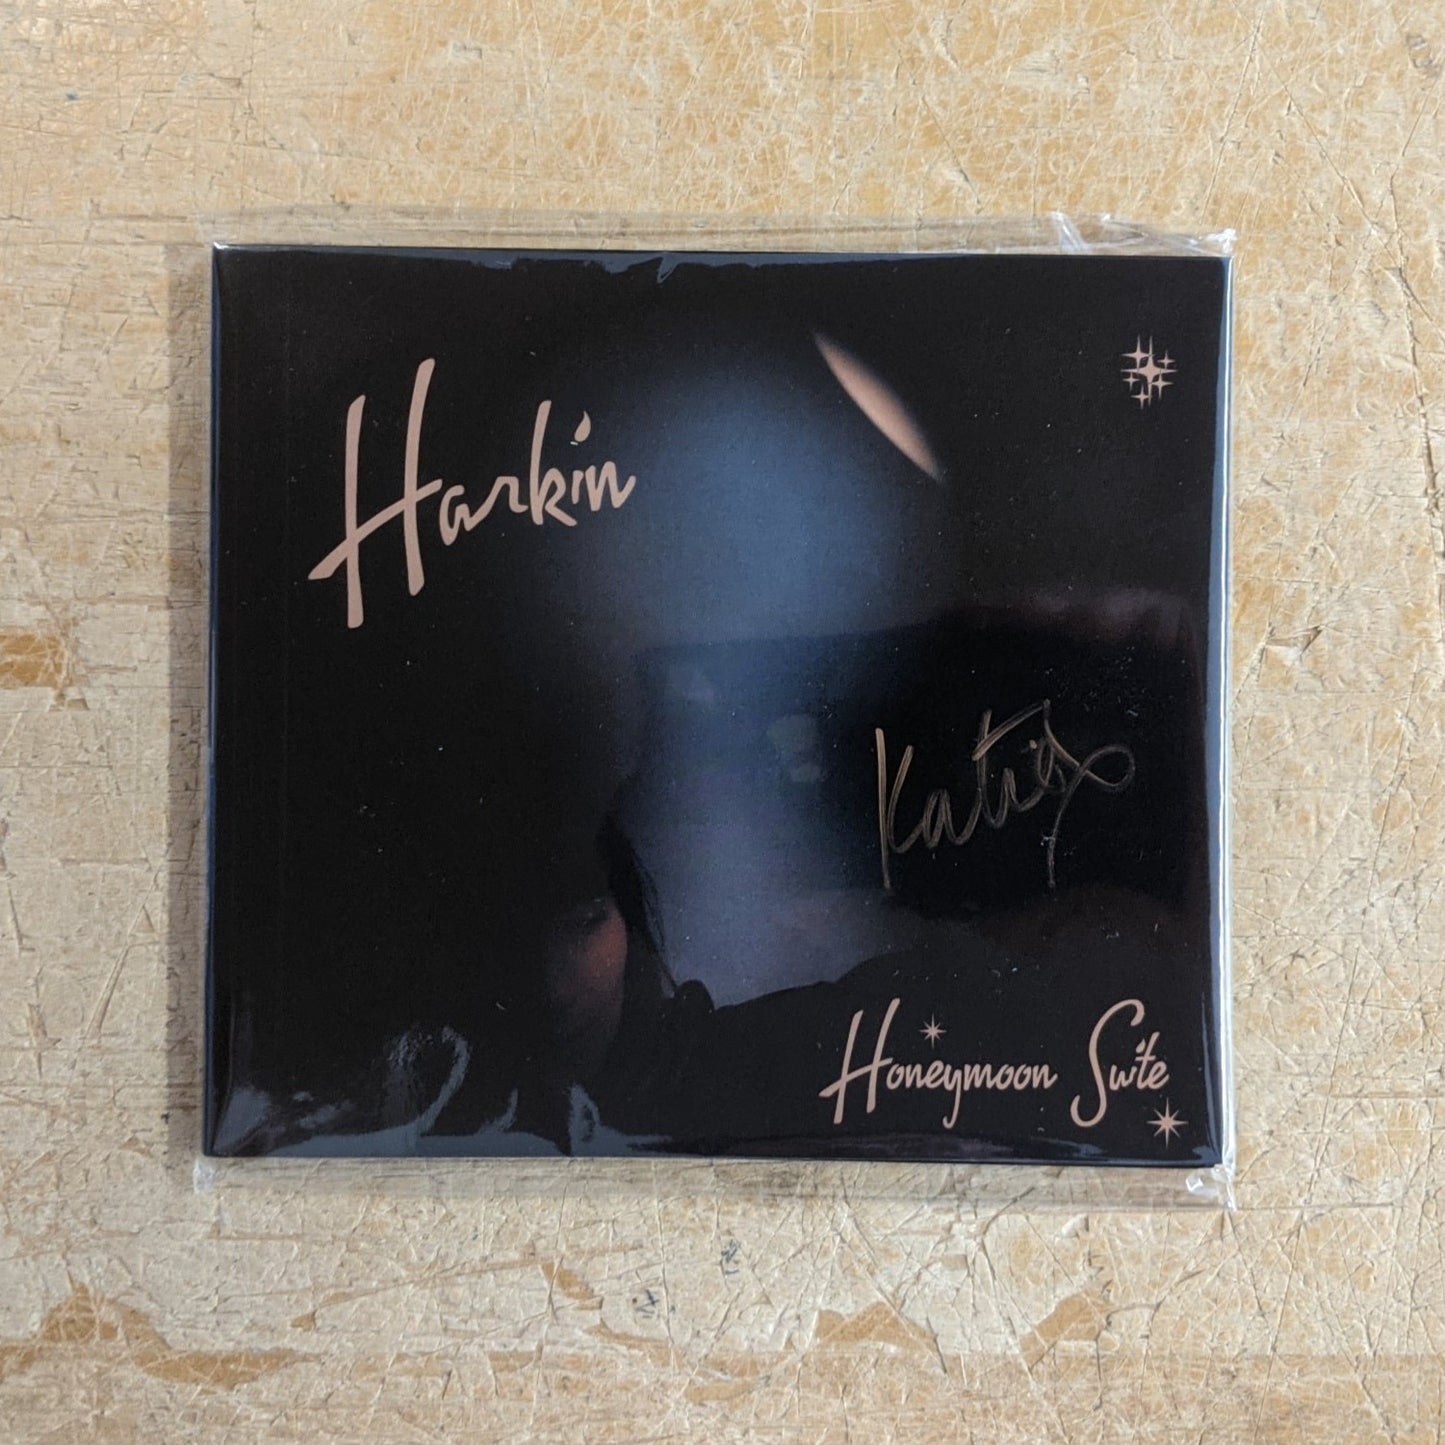 Arcade Sound - Harkin - Honeymoon Suite - Col. LP / CD (Signed) image